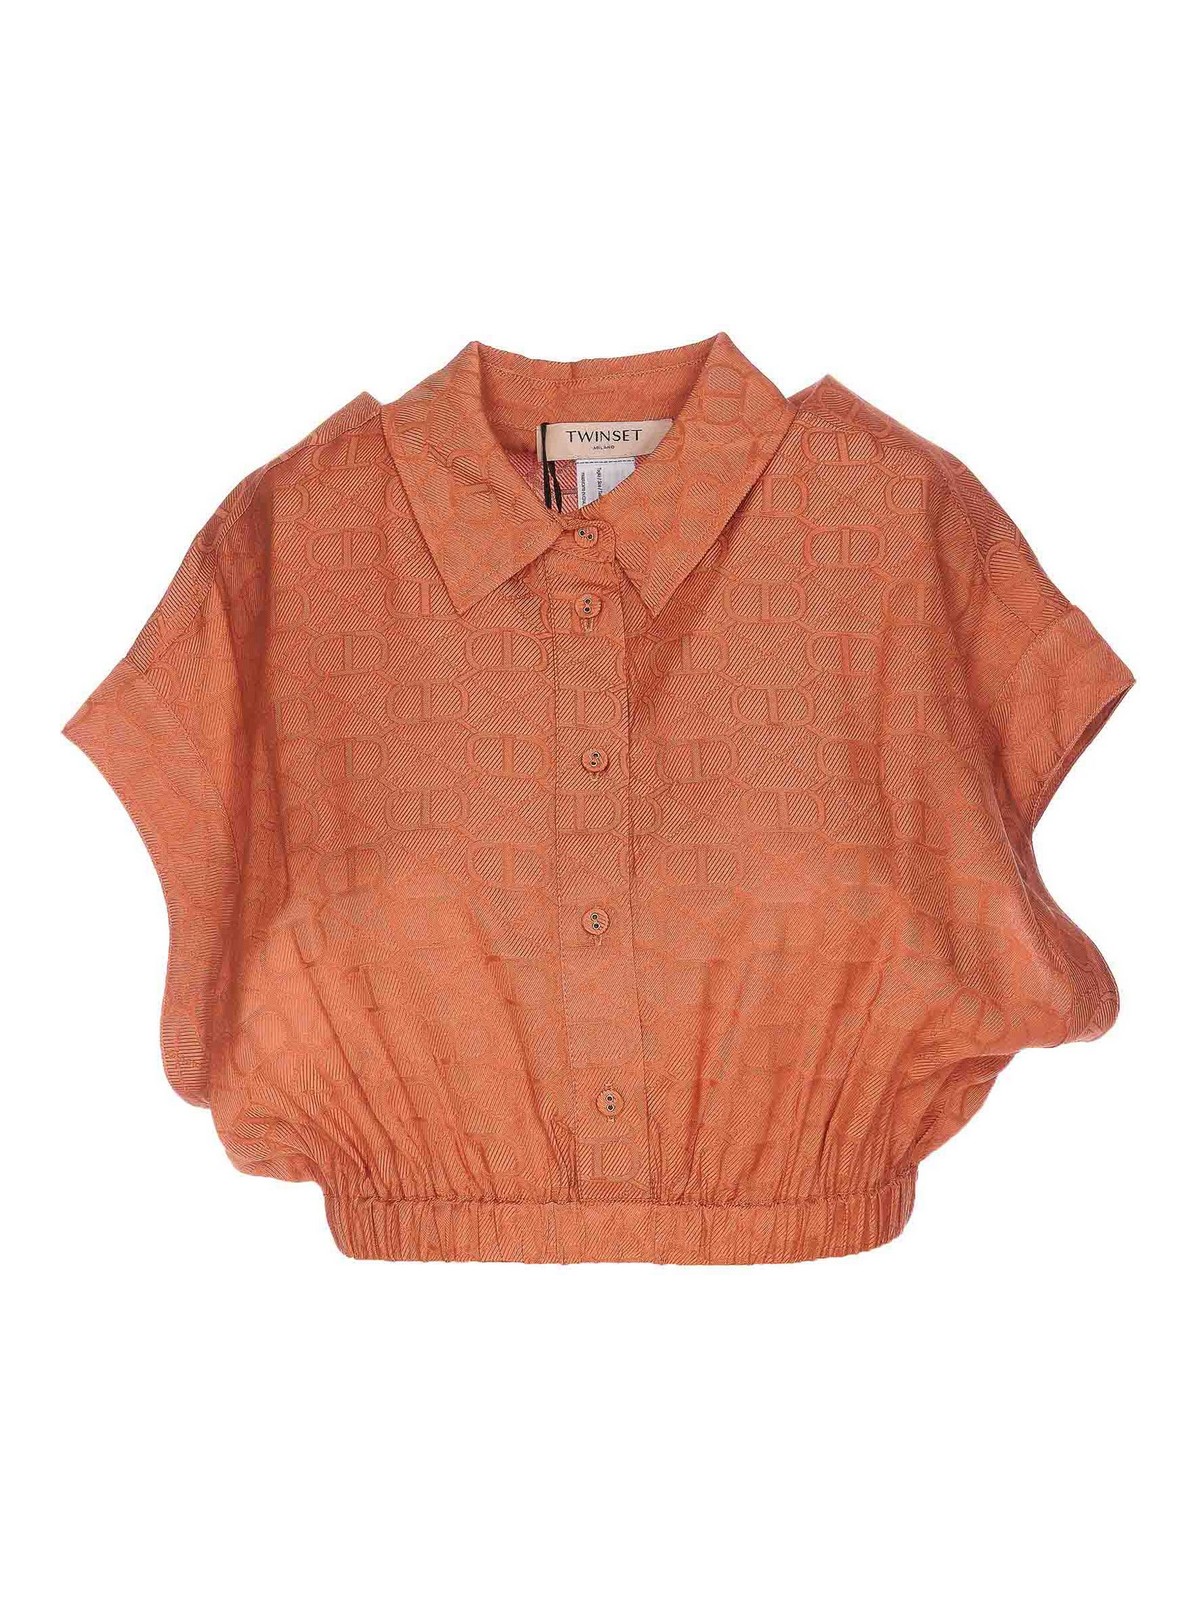 Twinset Canyon Shirt In Orange